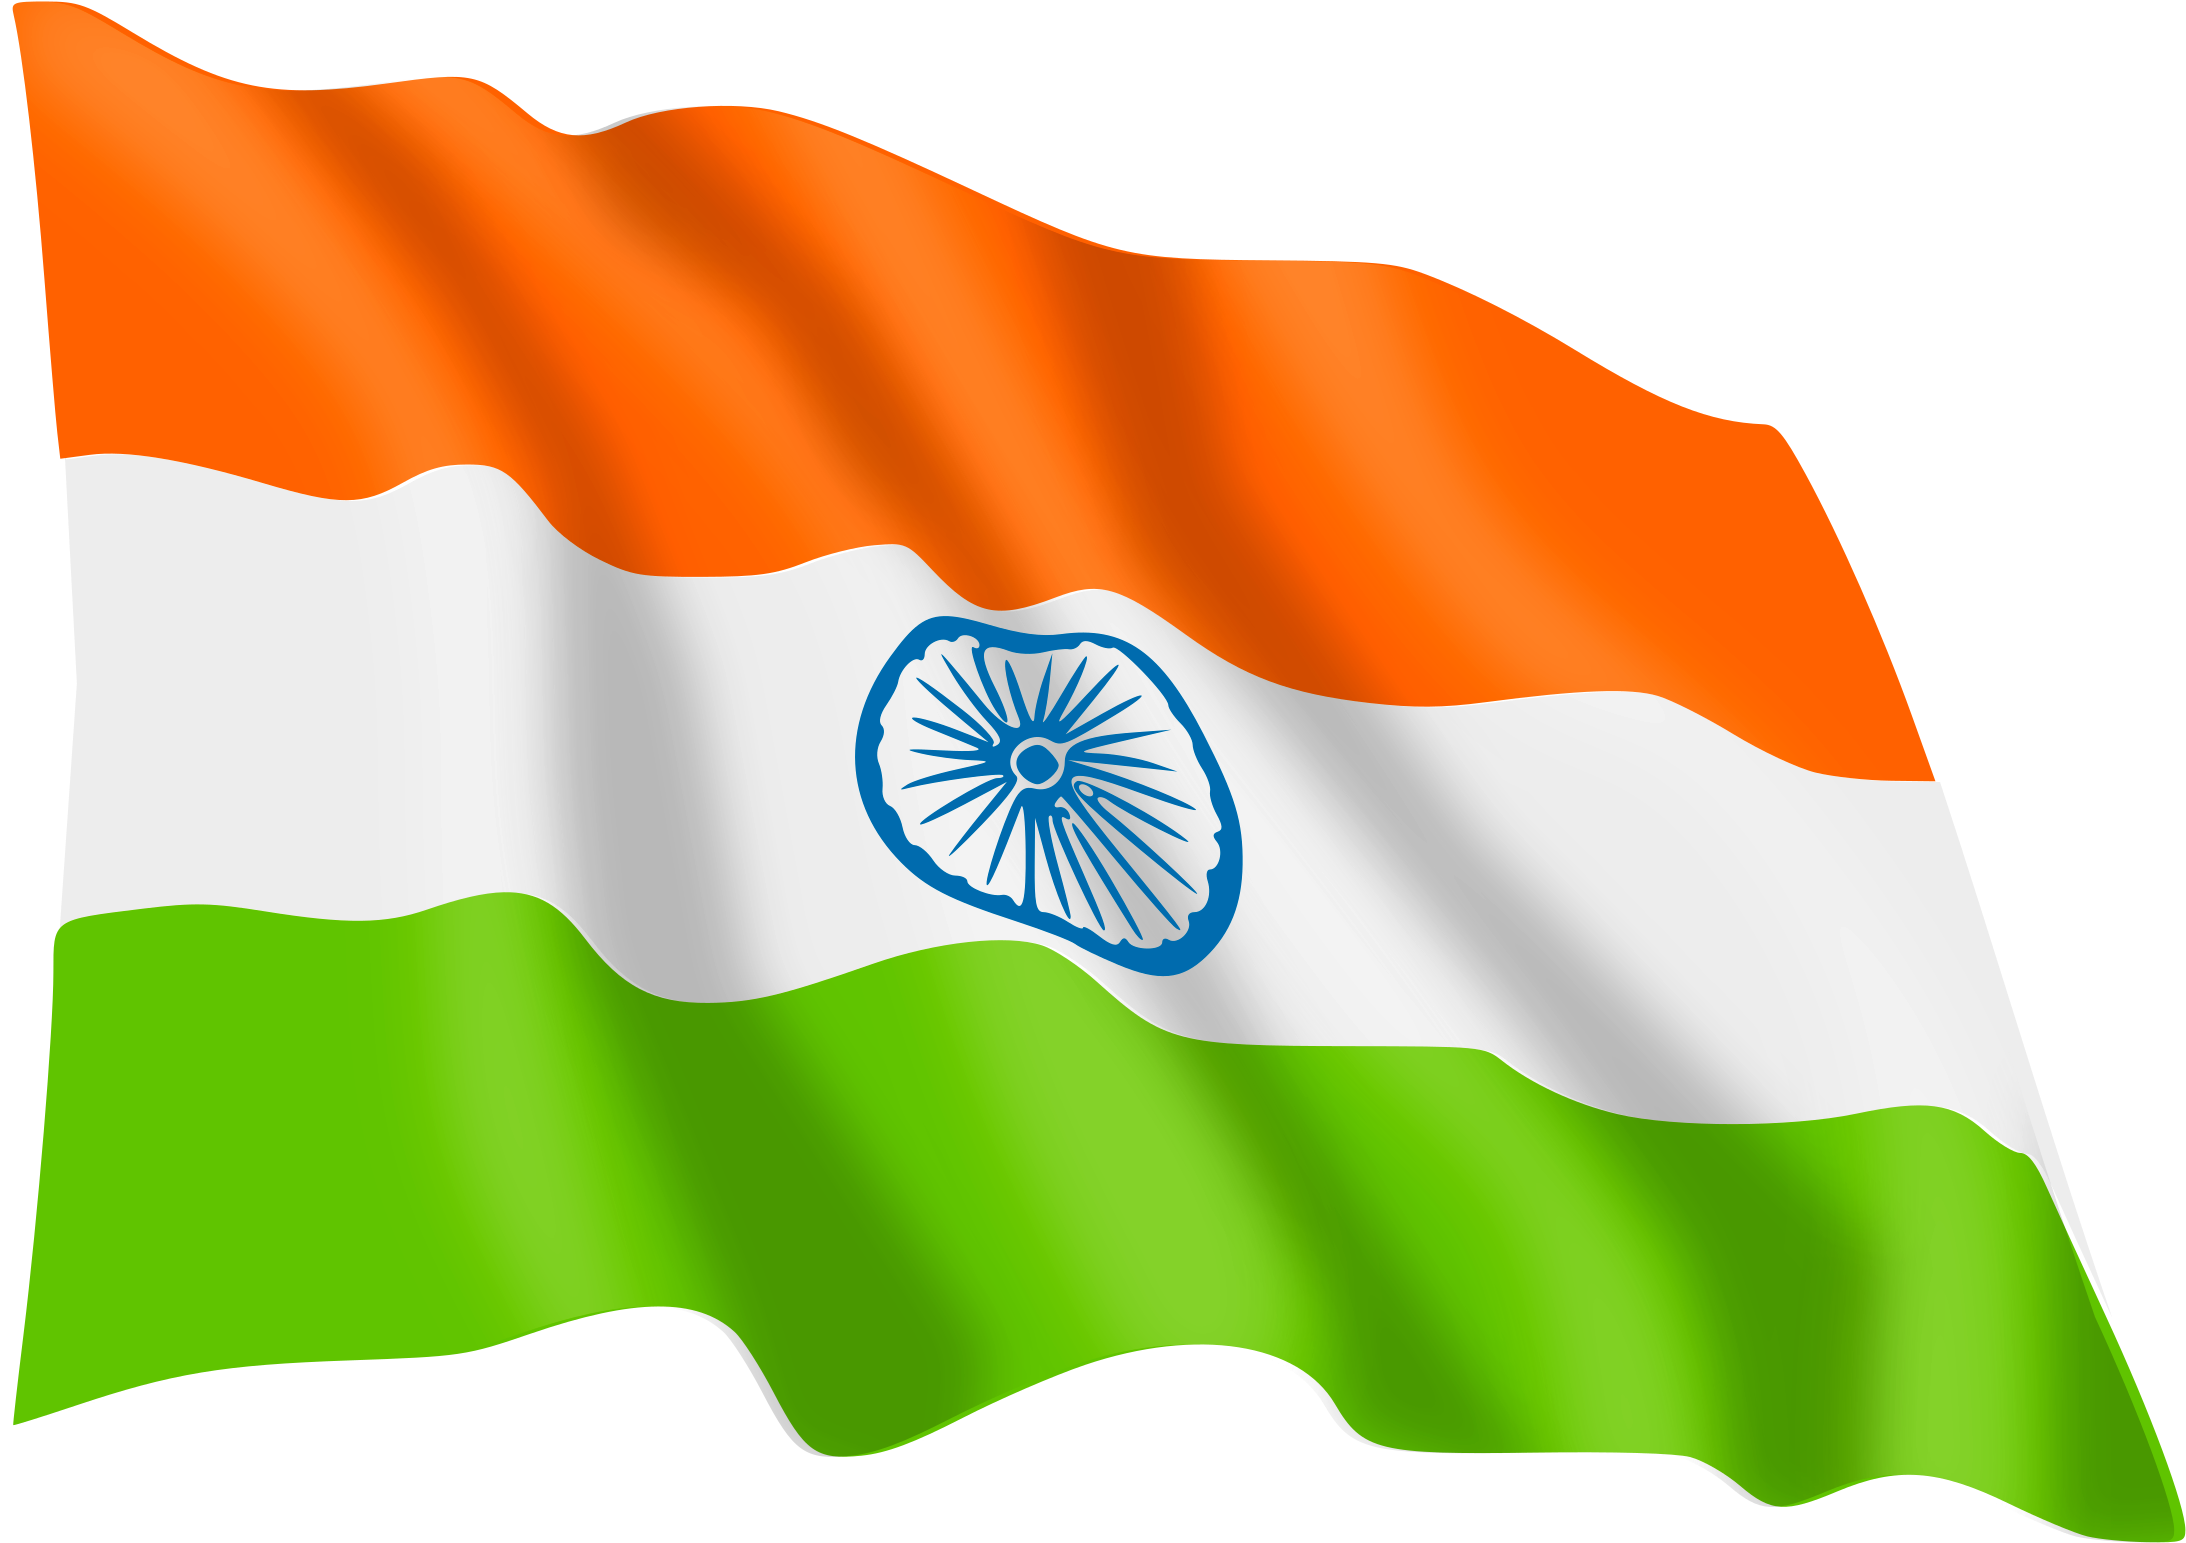 インドの旗の壁紙,国旗,オレンジ